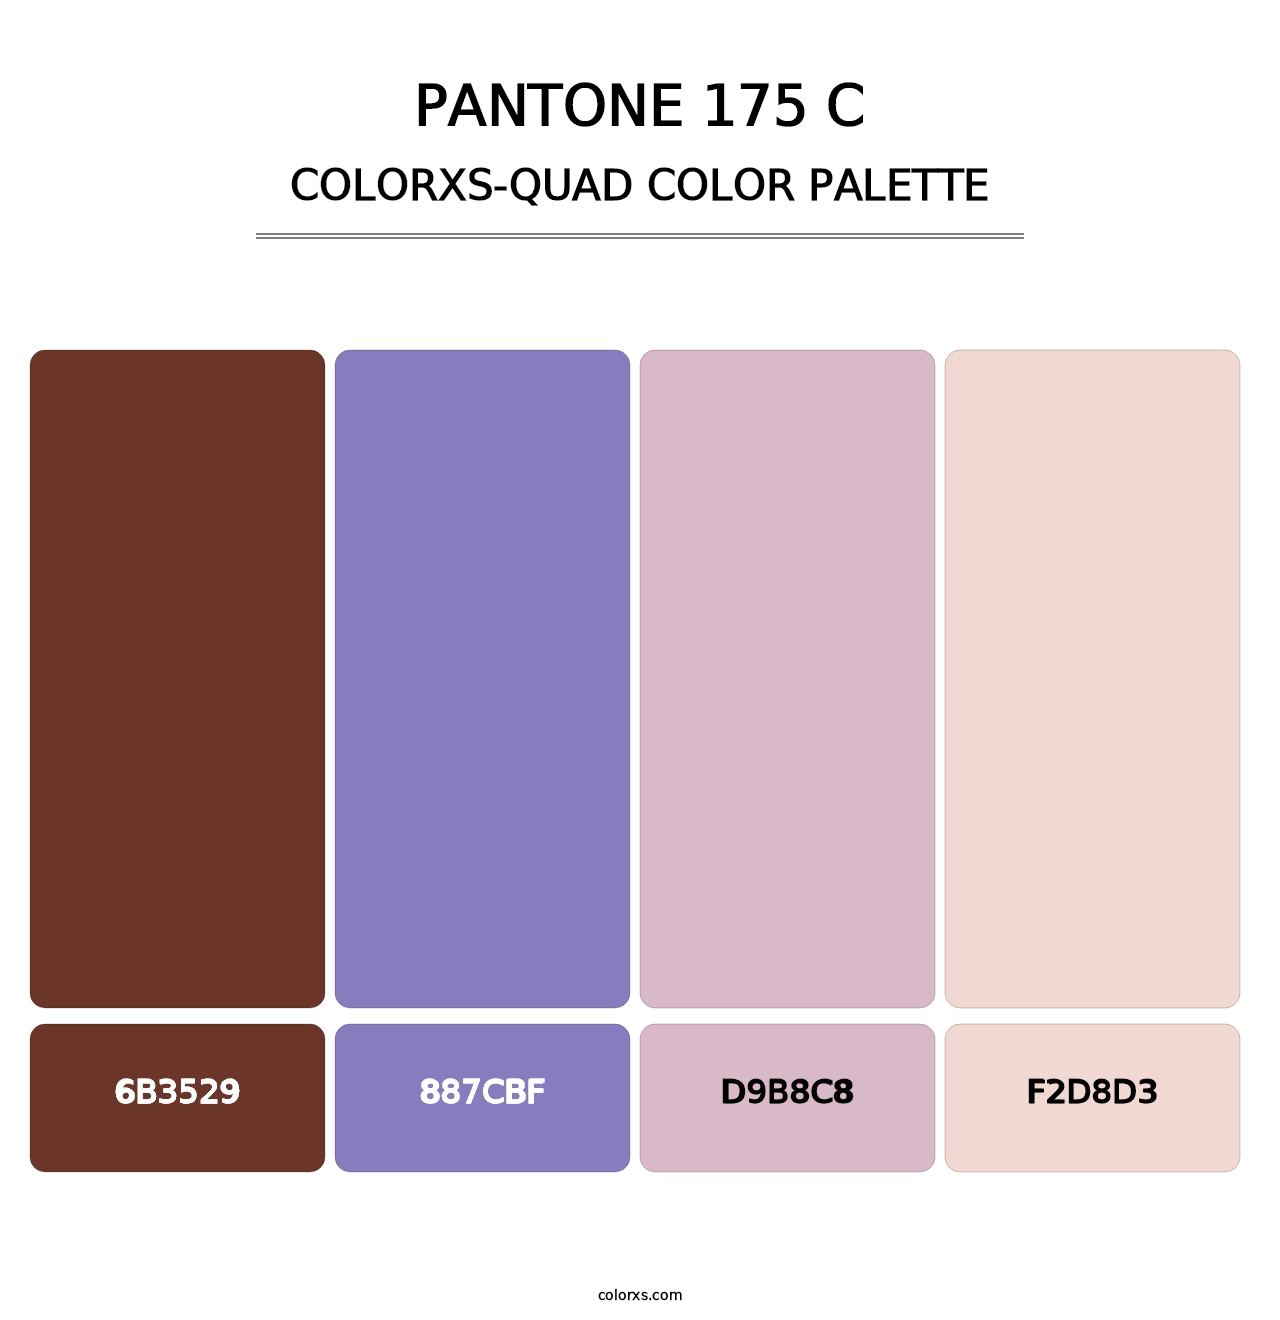 PANTONE 175 C - Colorxs Quad Palette